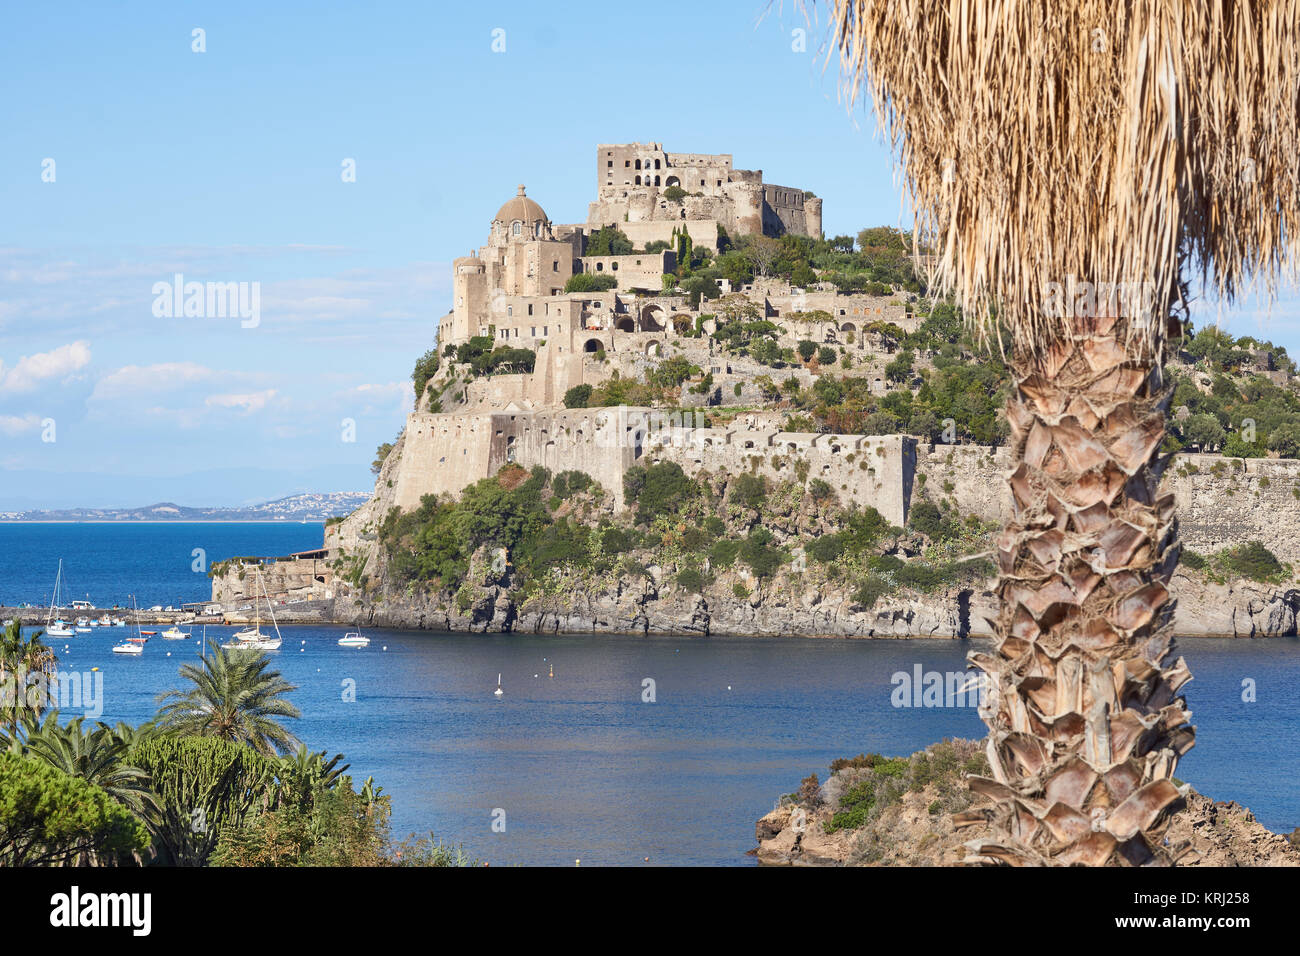 L'ancien château d'aragon ('Château Aragonais') et un exotique palmier dans Ischia Ponte, Italie Banque D'Images